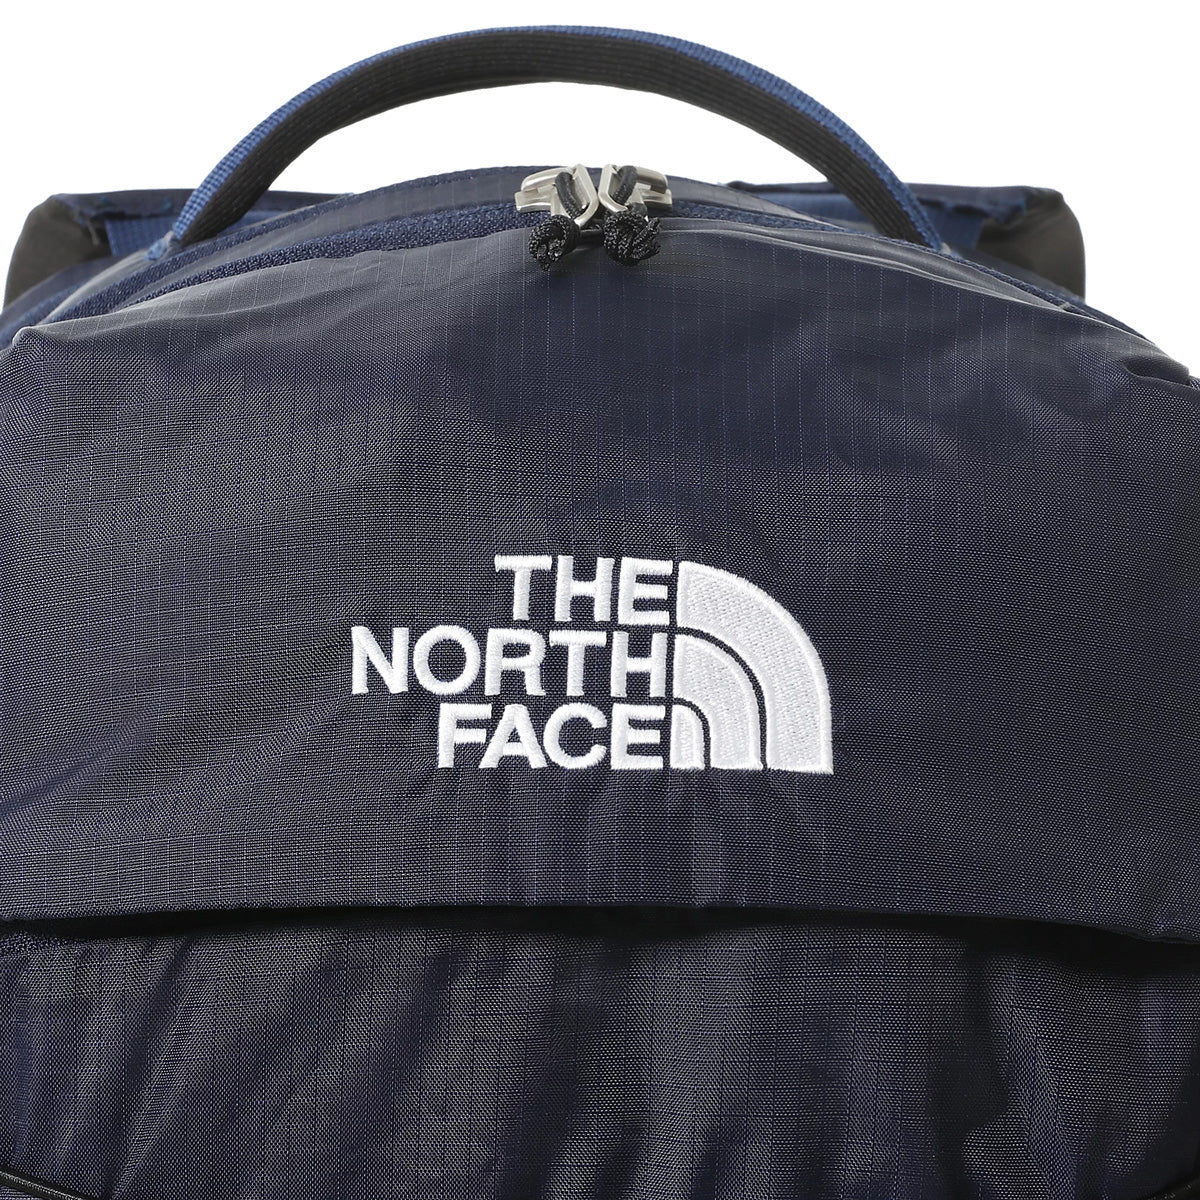 The North Face Borealis Backpack TNF Navy/TNF Black. Foto de detalhe do logotipo bordado, fecho e pega superior.